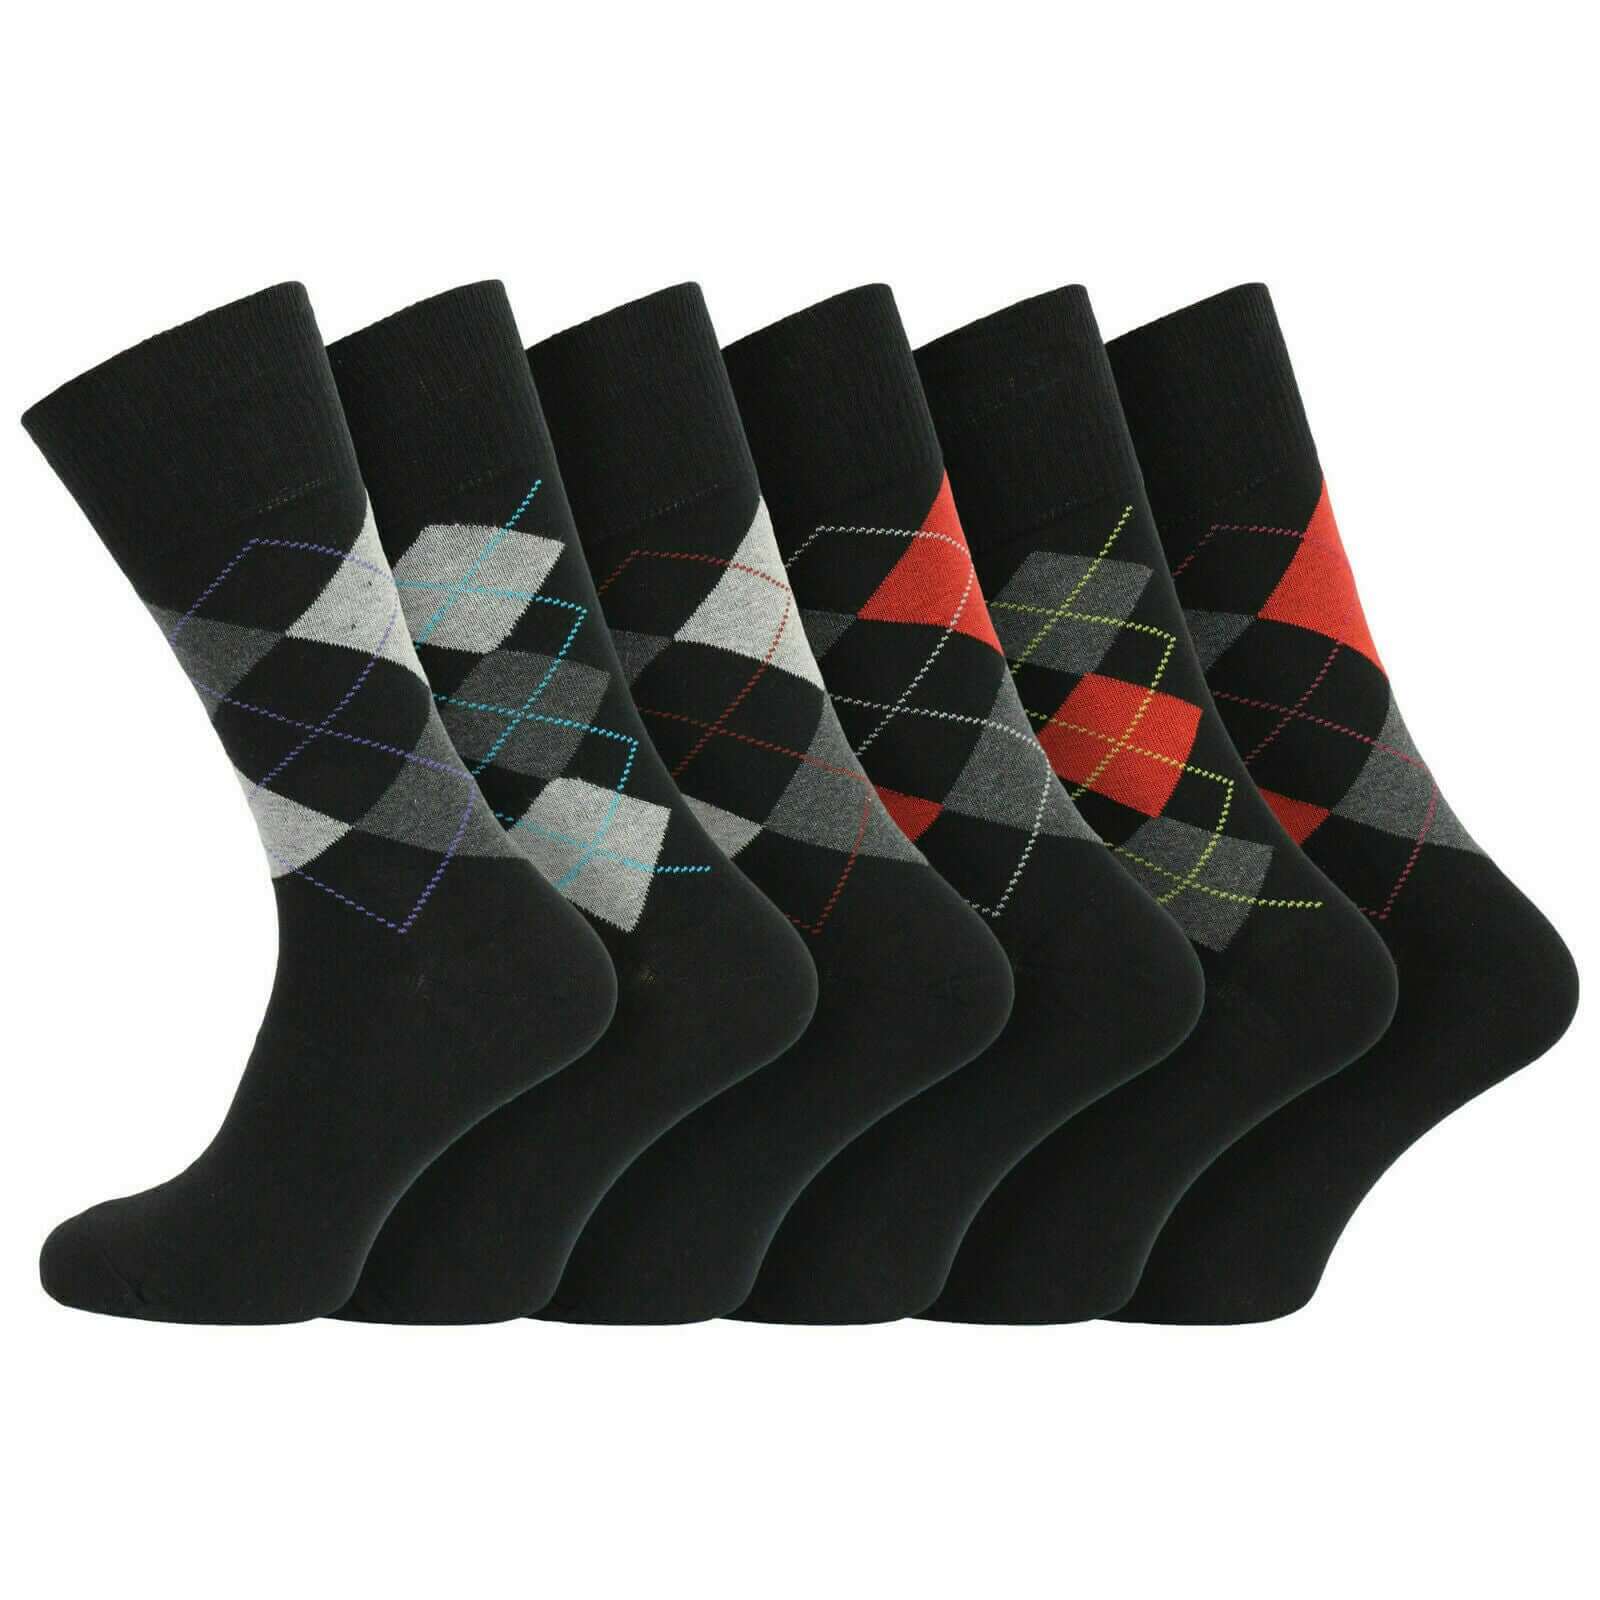 6 Pairs Men's Argyle diamond Socks Non Elastic 100% Cotton Size 6-11